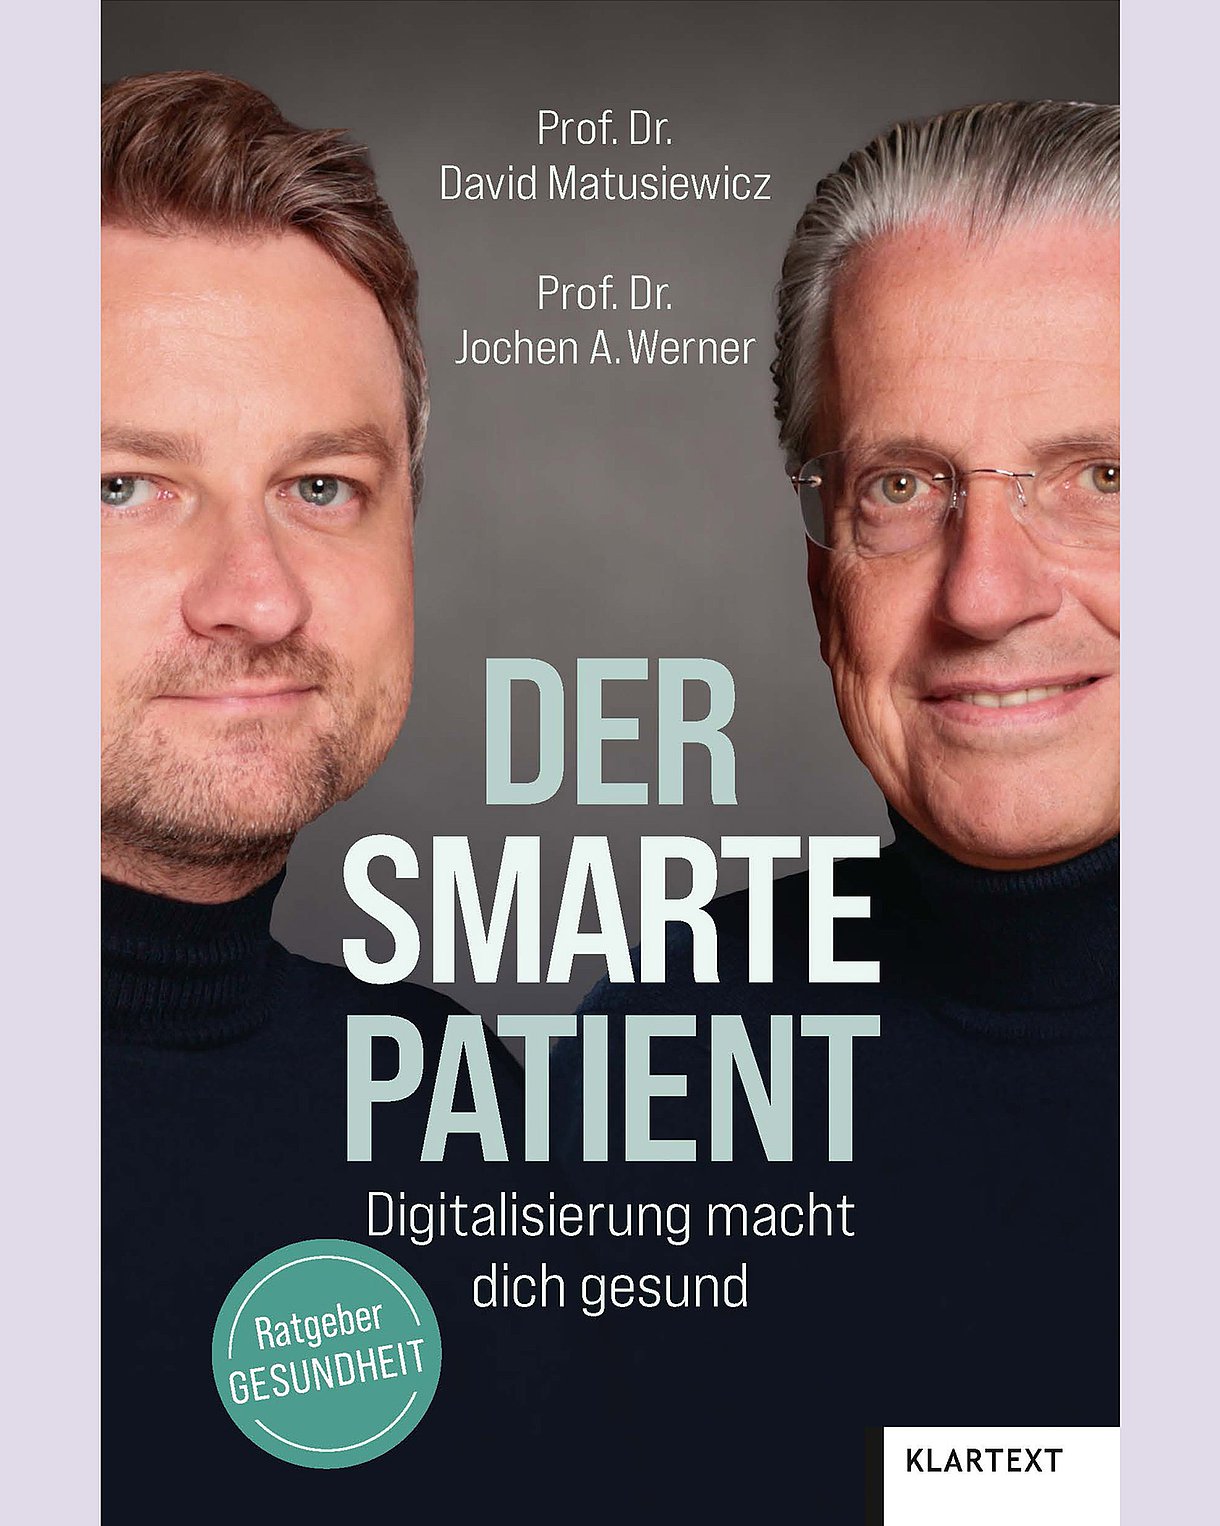 Foto: Buchcover: David Matusiewicz, Jochen A. Werner: Der smarte Patient. Digitalisierung macht Dich gesund. Verlag Klartext